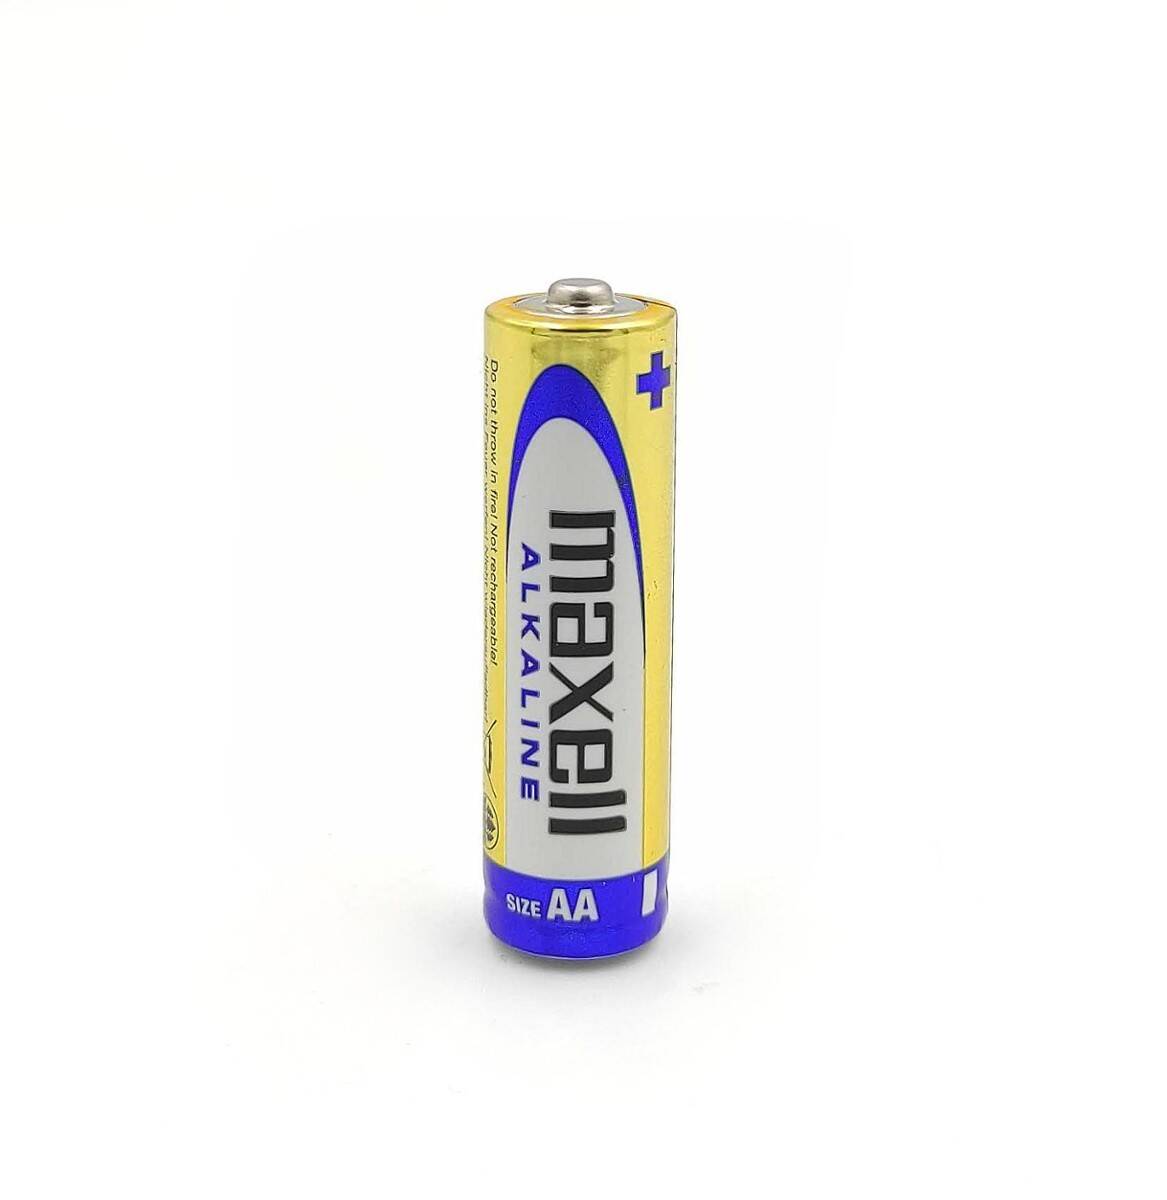 MAXELL bateria alkaliczna LR3 1,5V AAA 1 szt